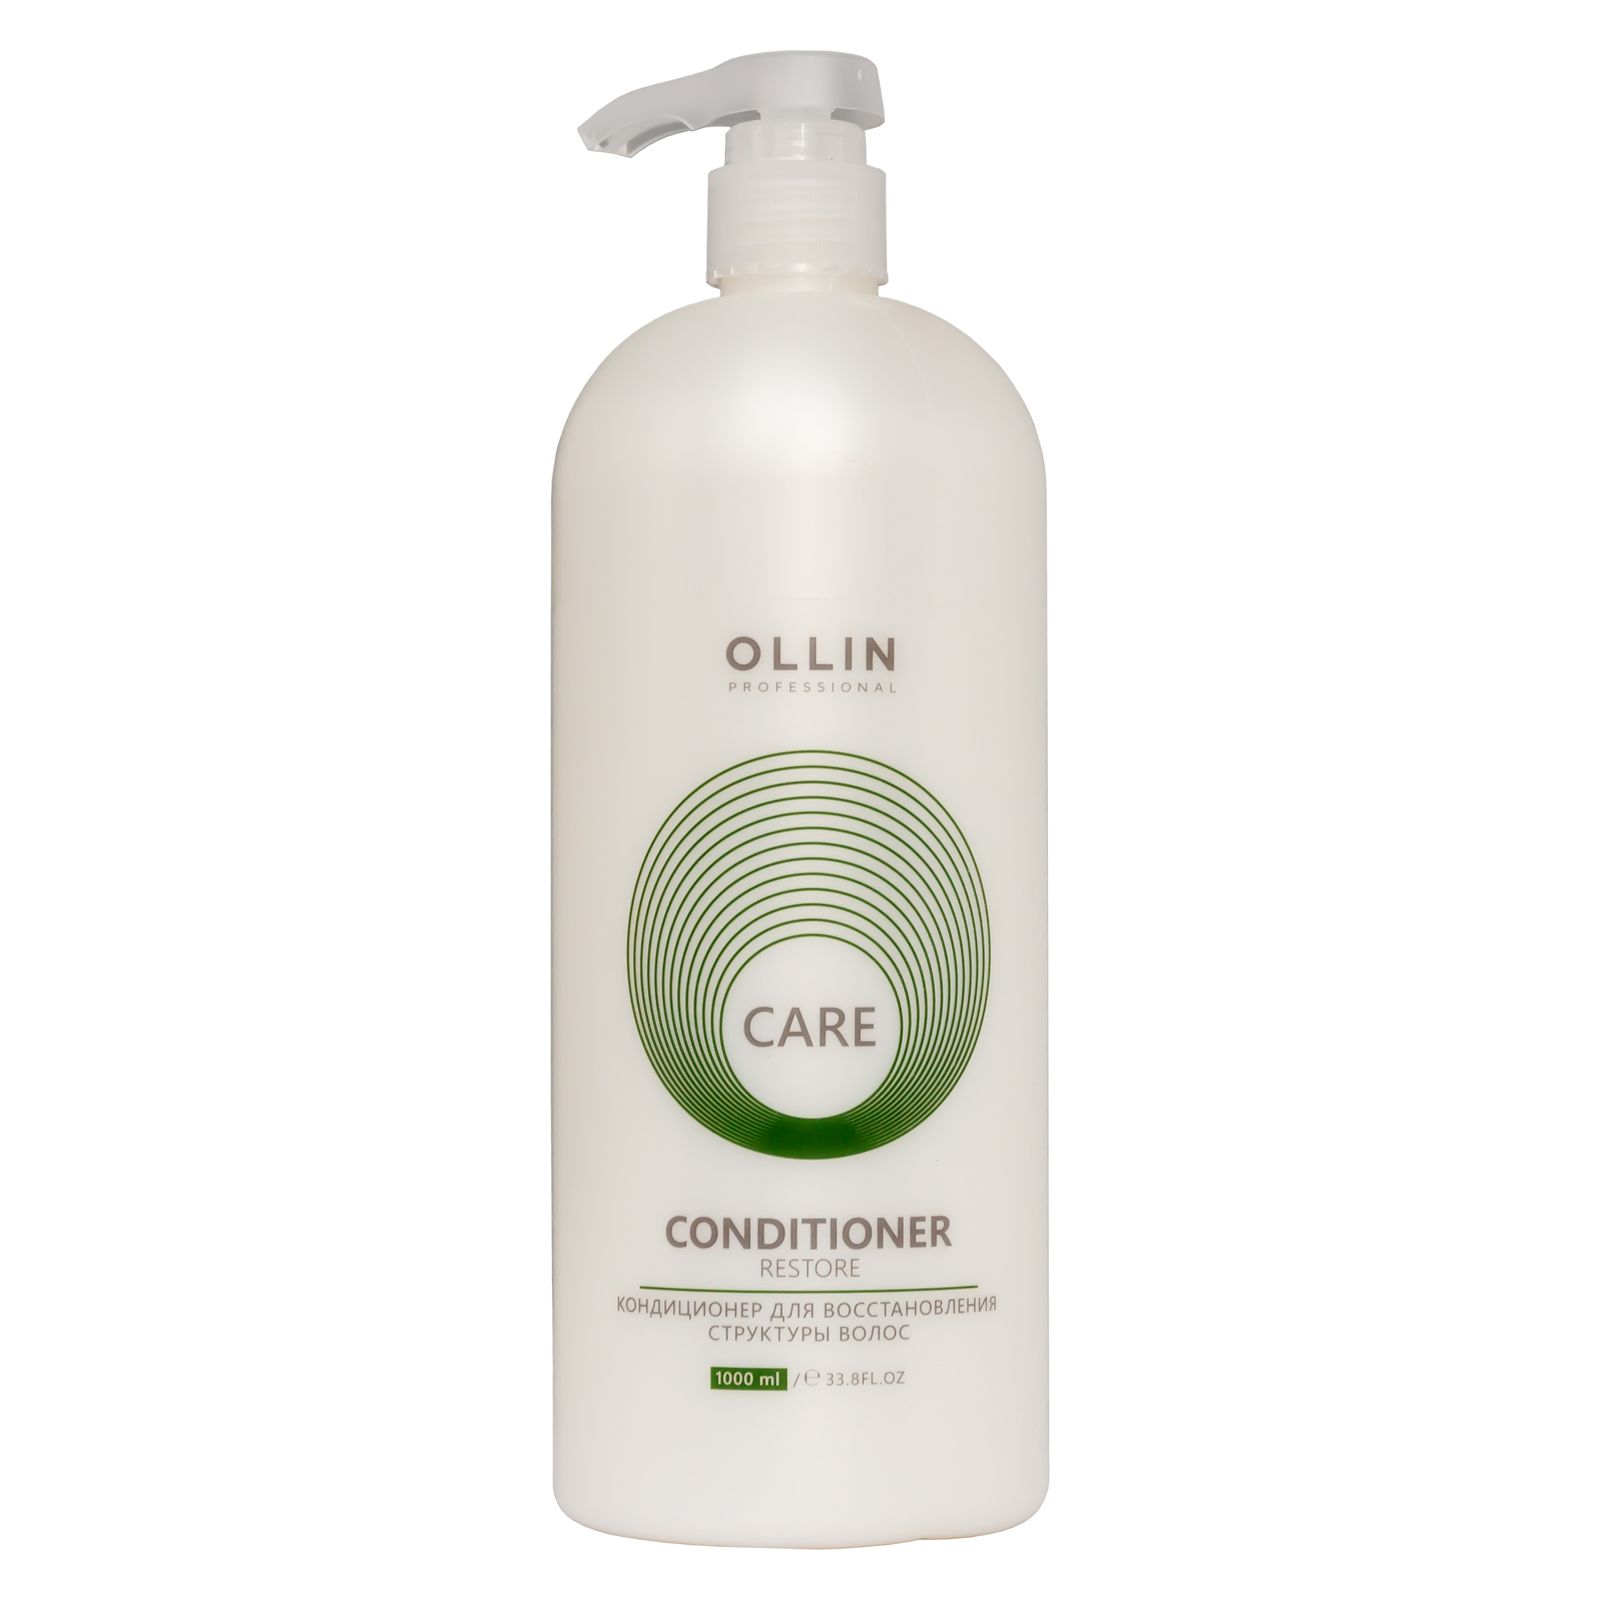 Что делает кондиционер для волос. Ollin Care restore Shampoo. Оллин бальзам увлажняющий 1000мл. Ollin Care шампунь увлажняющий 1000мл. Ollin Care restore Conditioner.